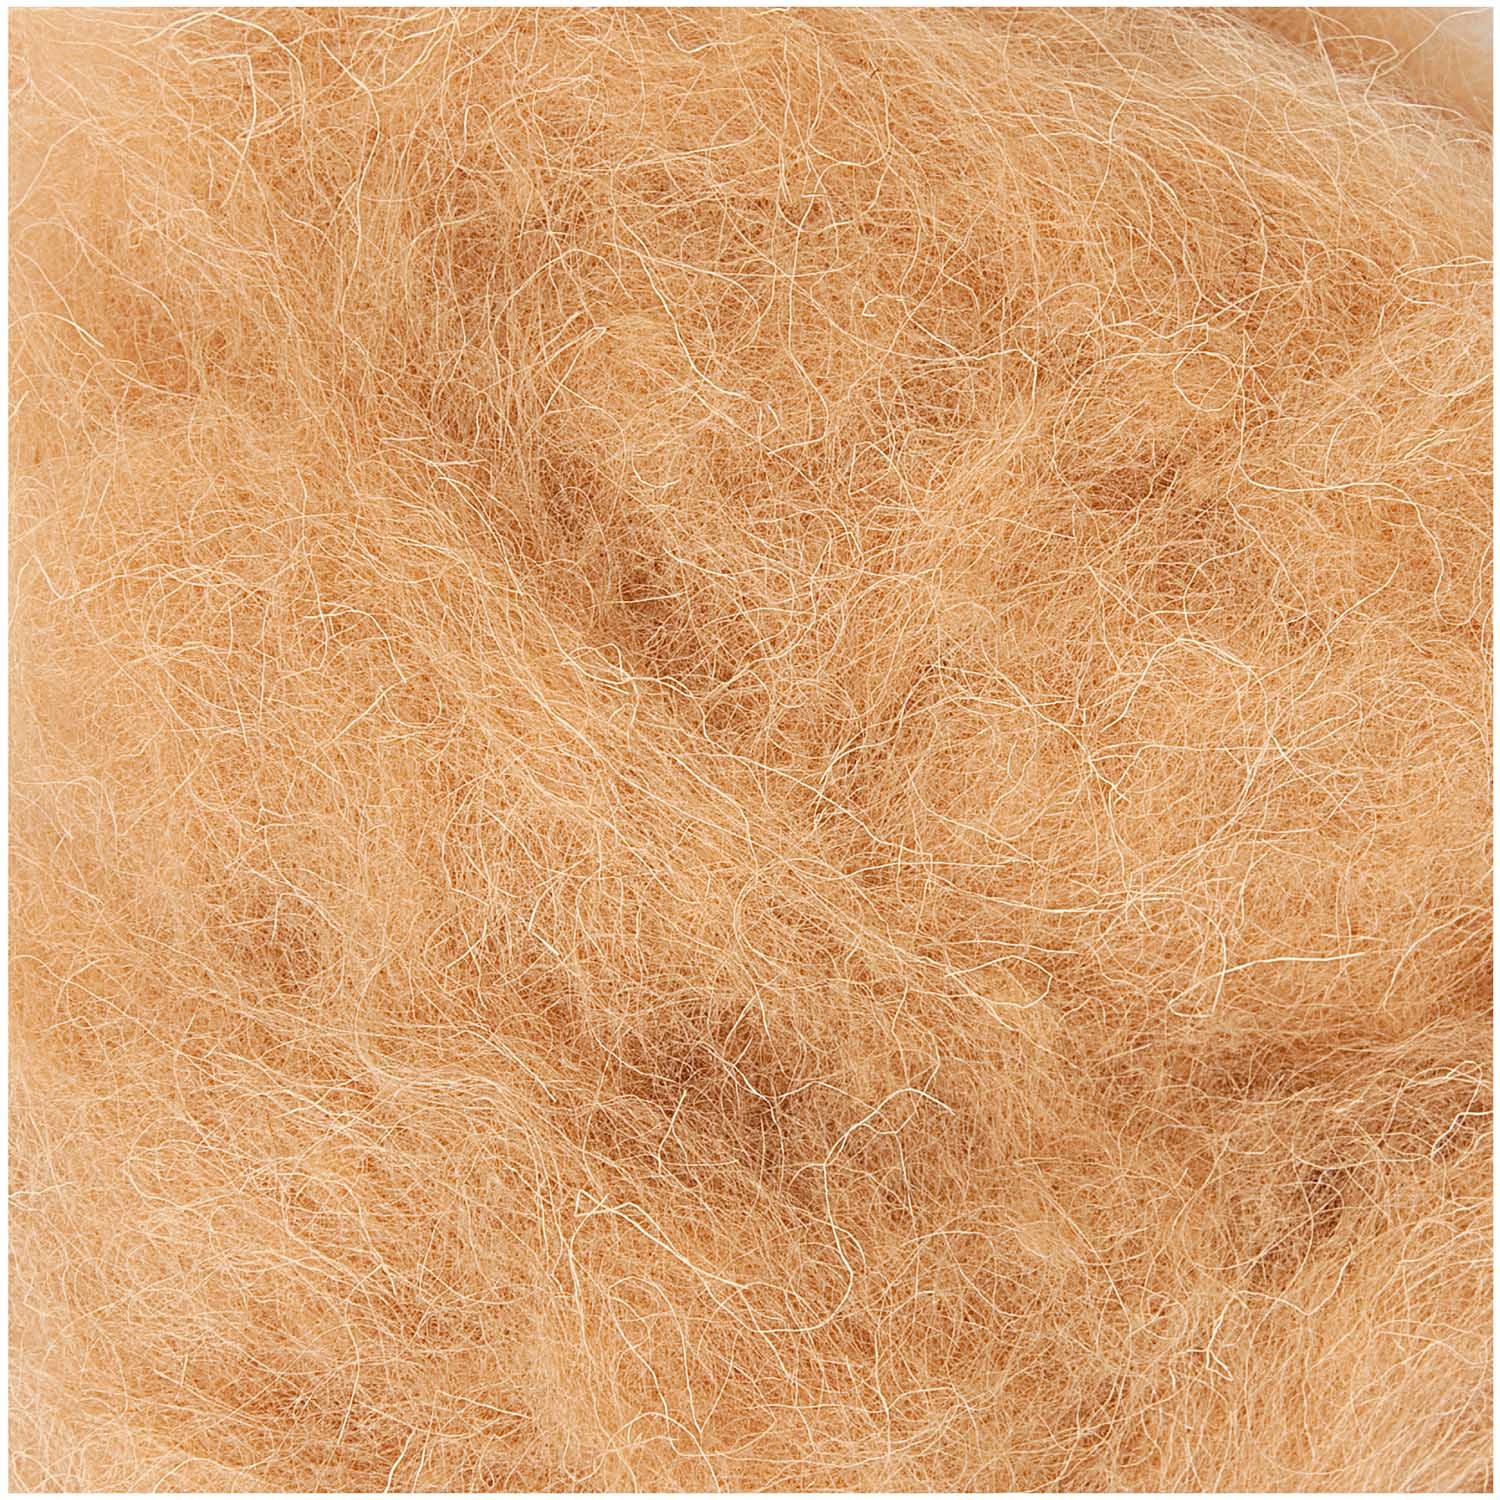 Light Brown - 50g Felt Wool for Wet and Dry Needle Felting